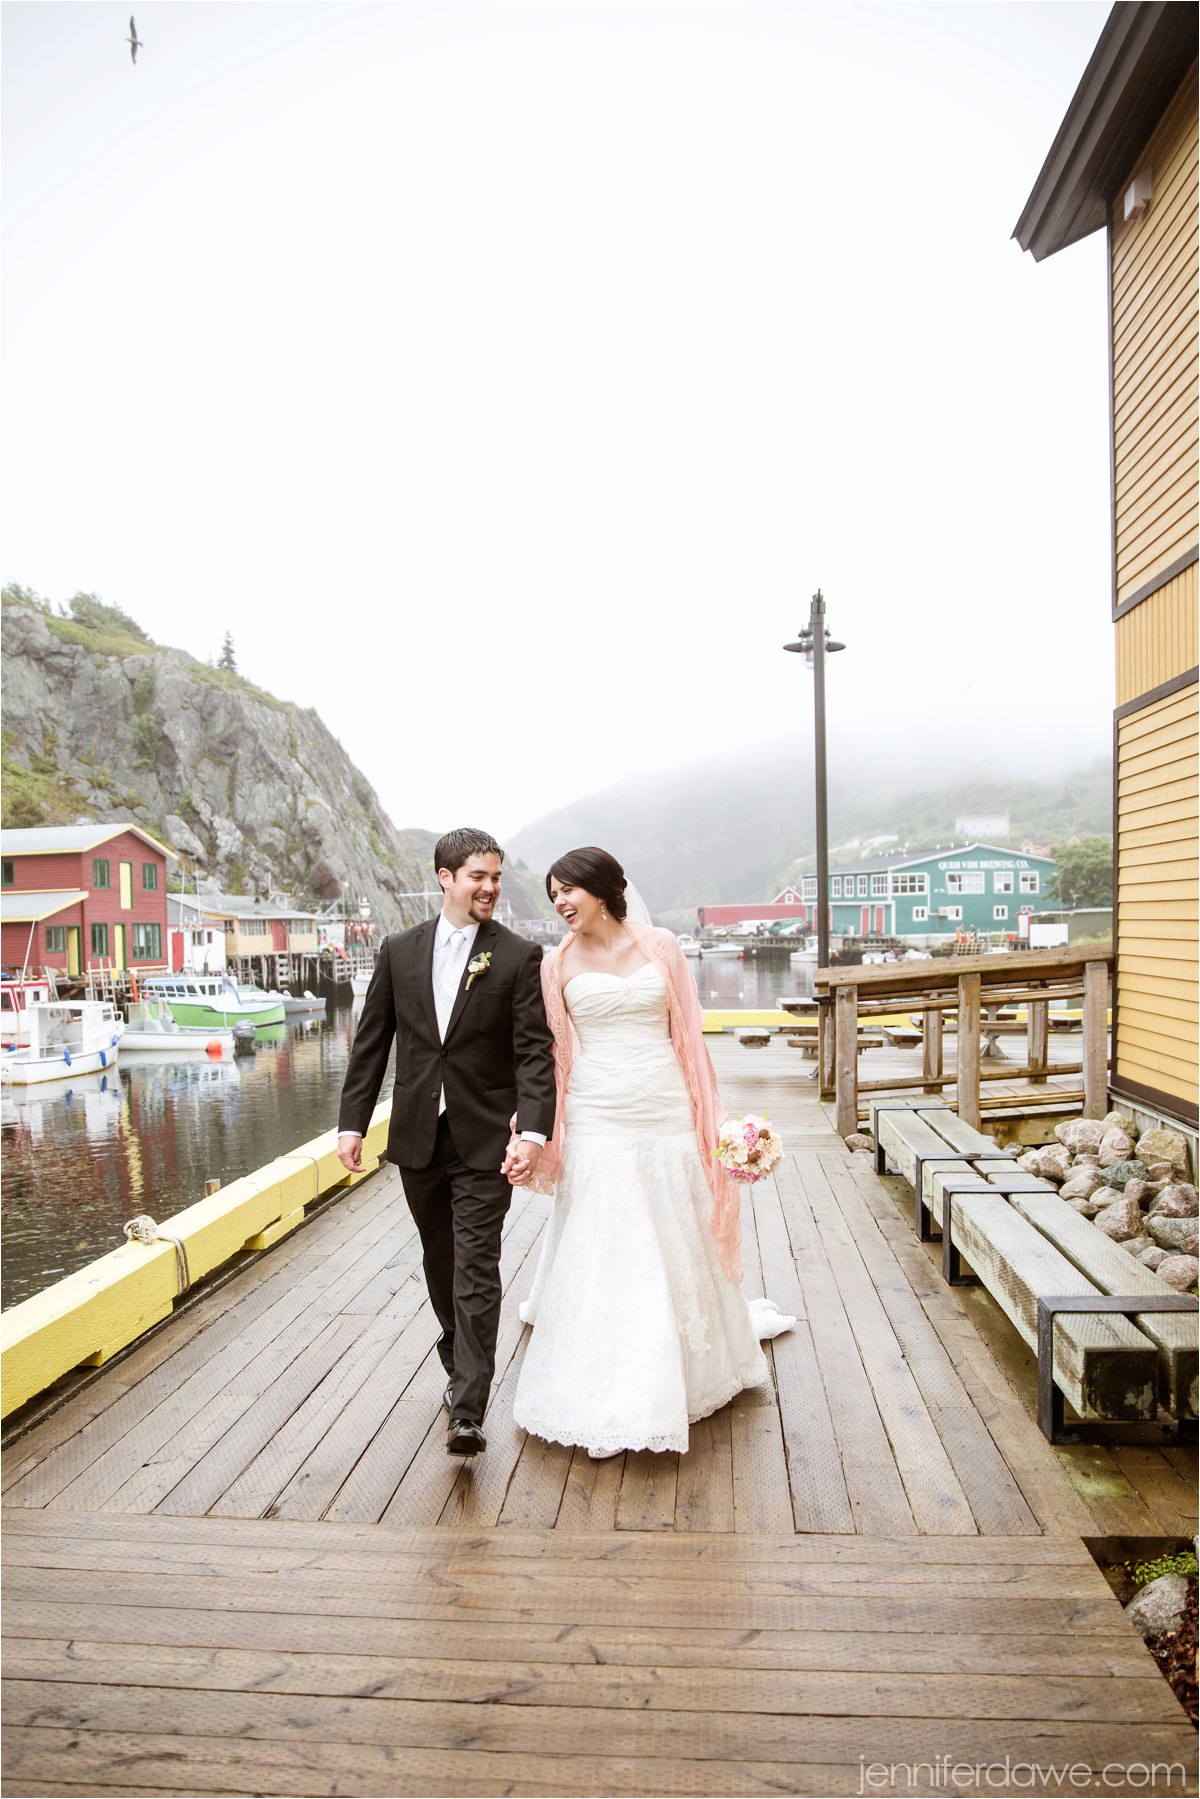 St John's Newfoundland Wedding Photographers Best Newfoundland Wedding Photographer Jennifer Dawe Photography_4202